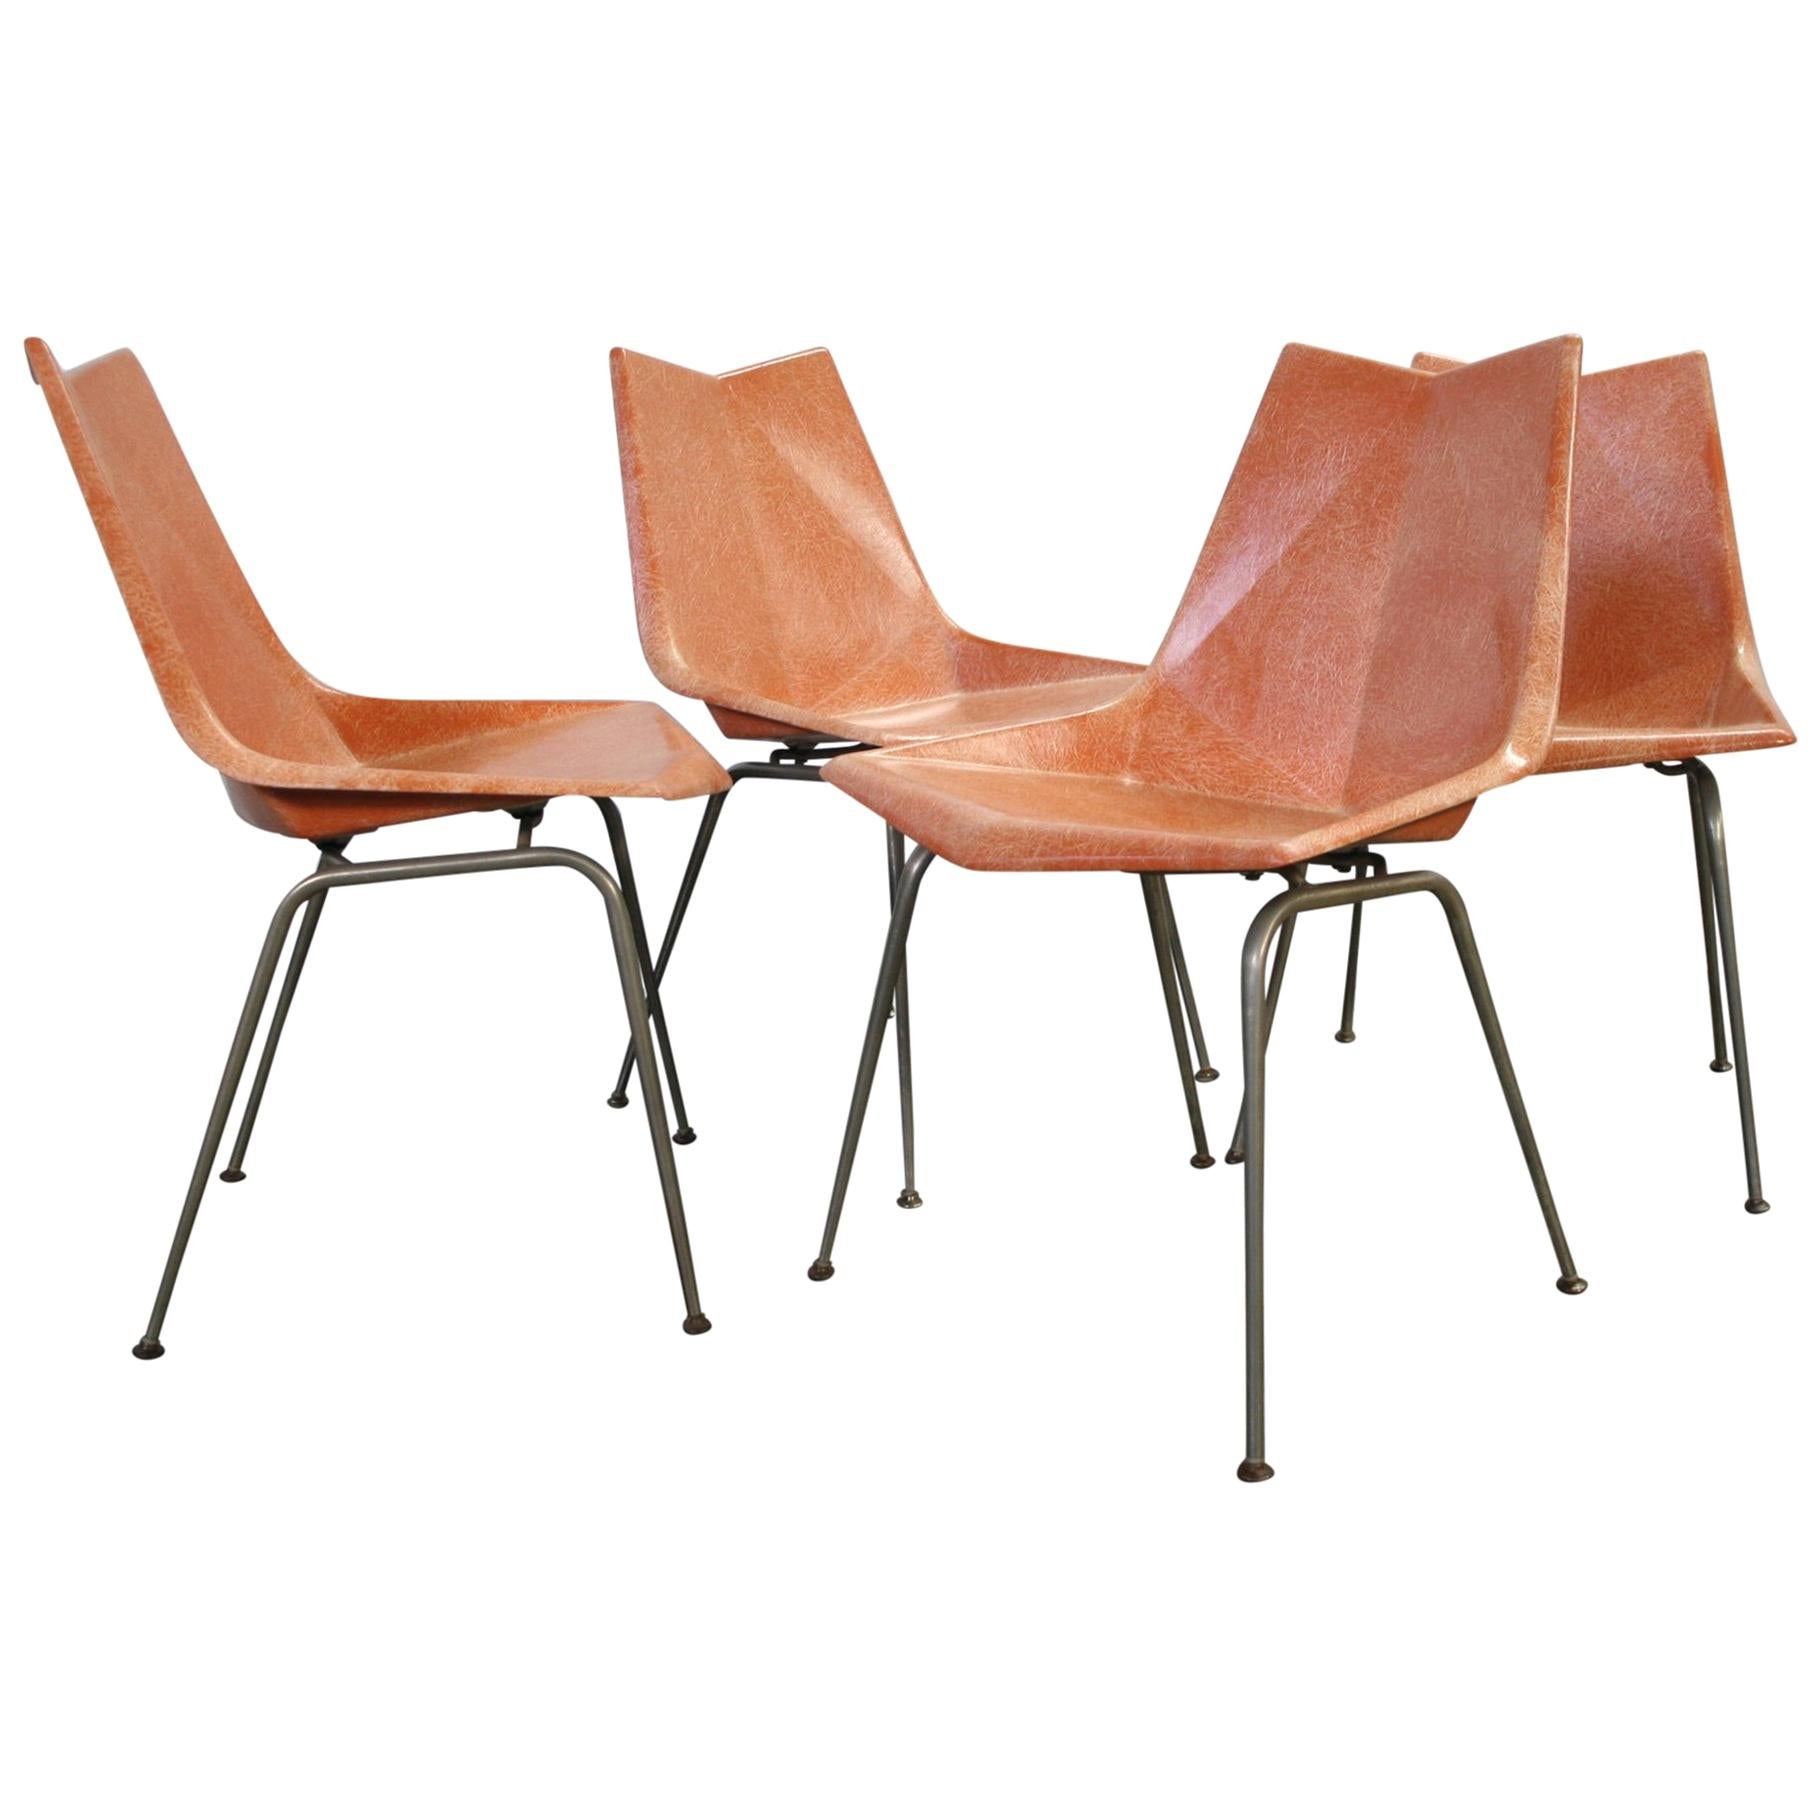 Original Midcentury Orange Paul McCobb Origami Fiberglass Chairs Set of 4 Rare